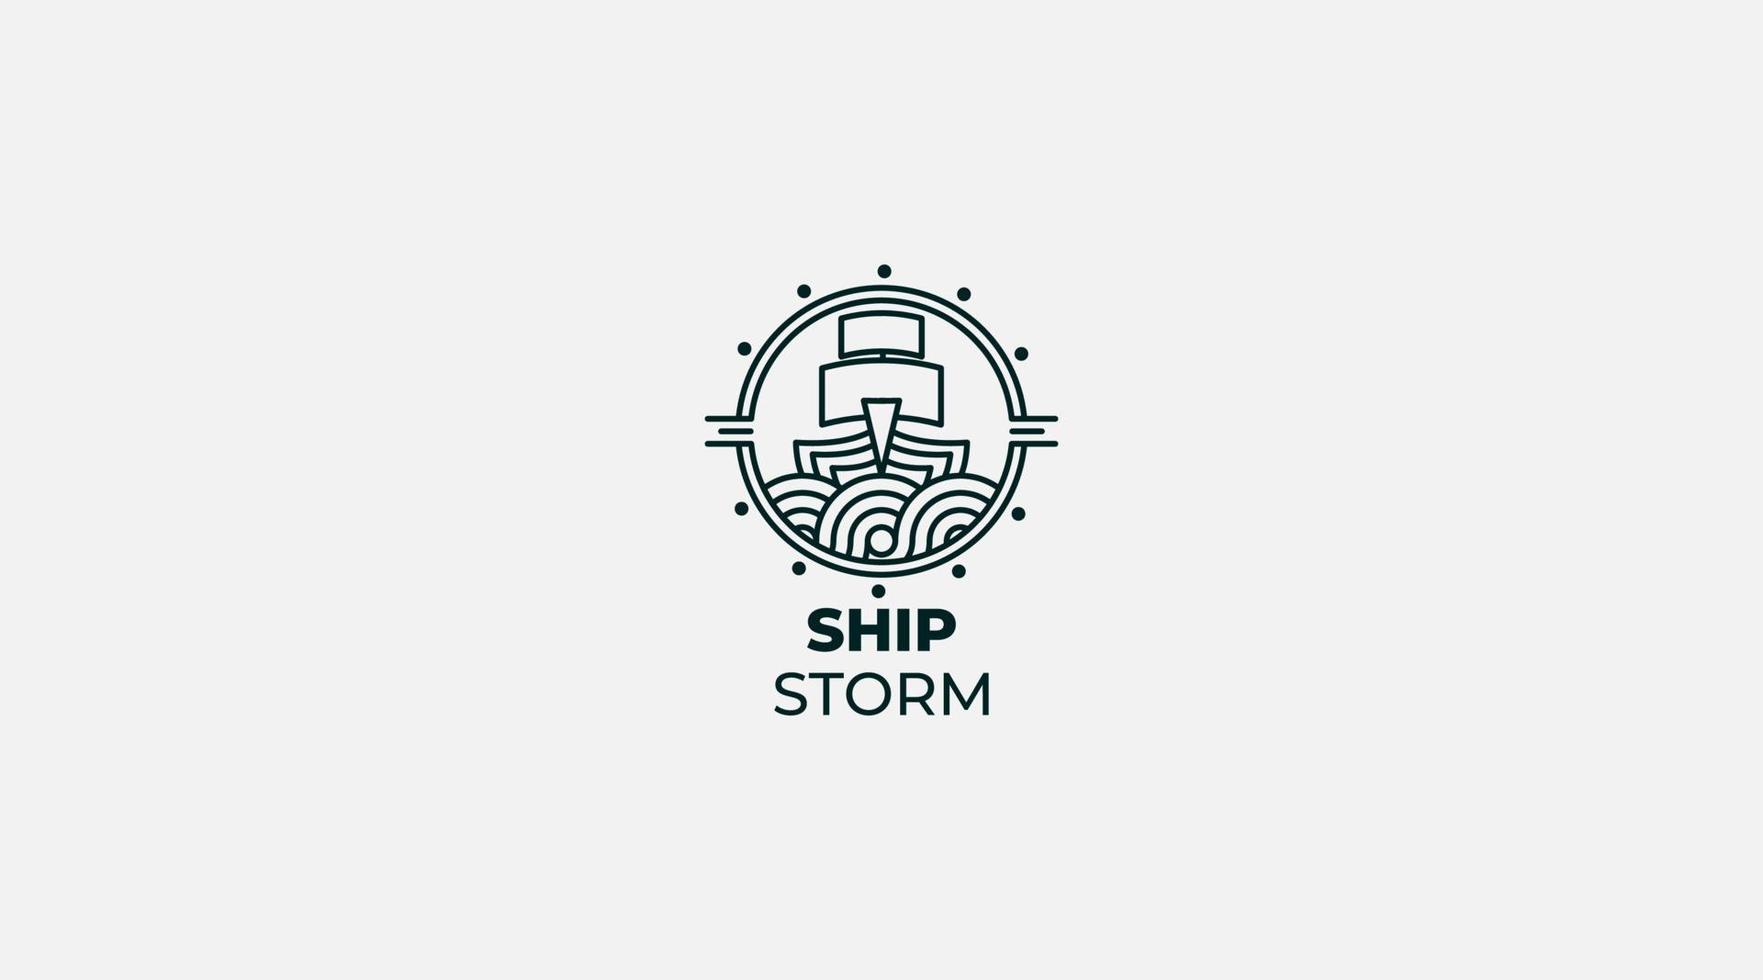 Ship storm vector logo design icon template